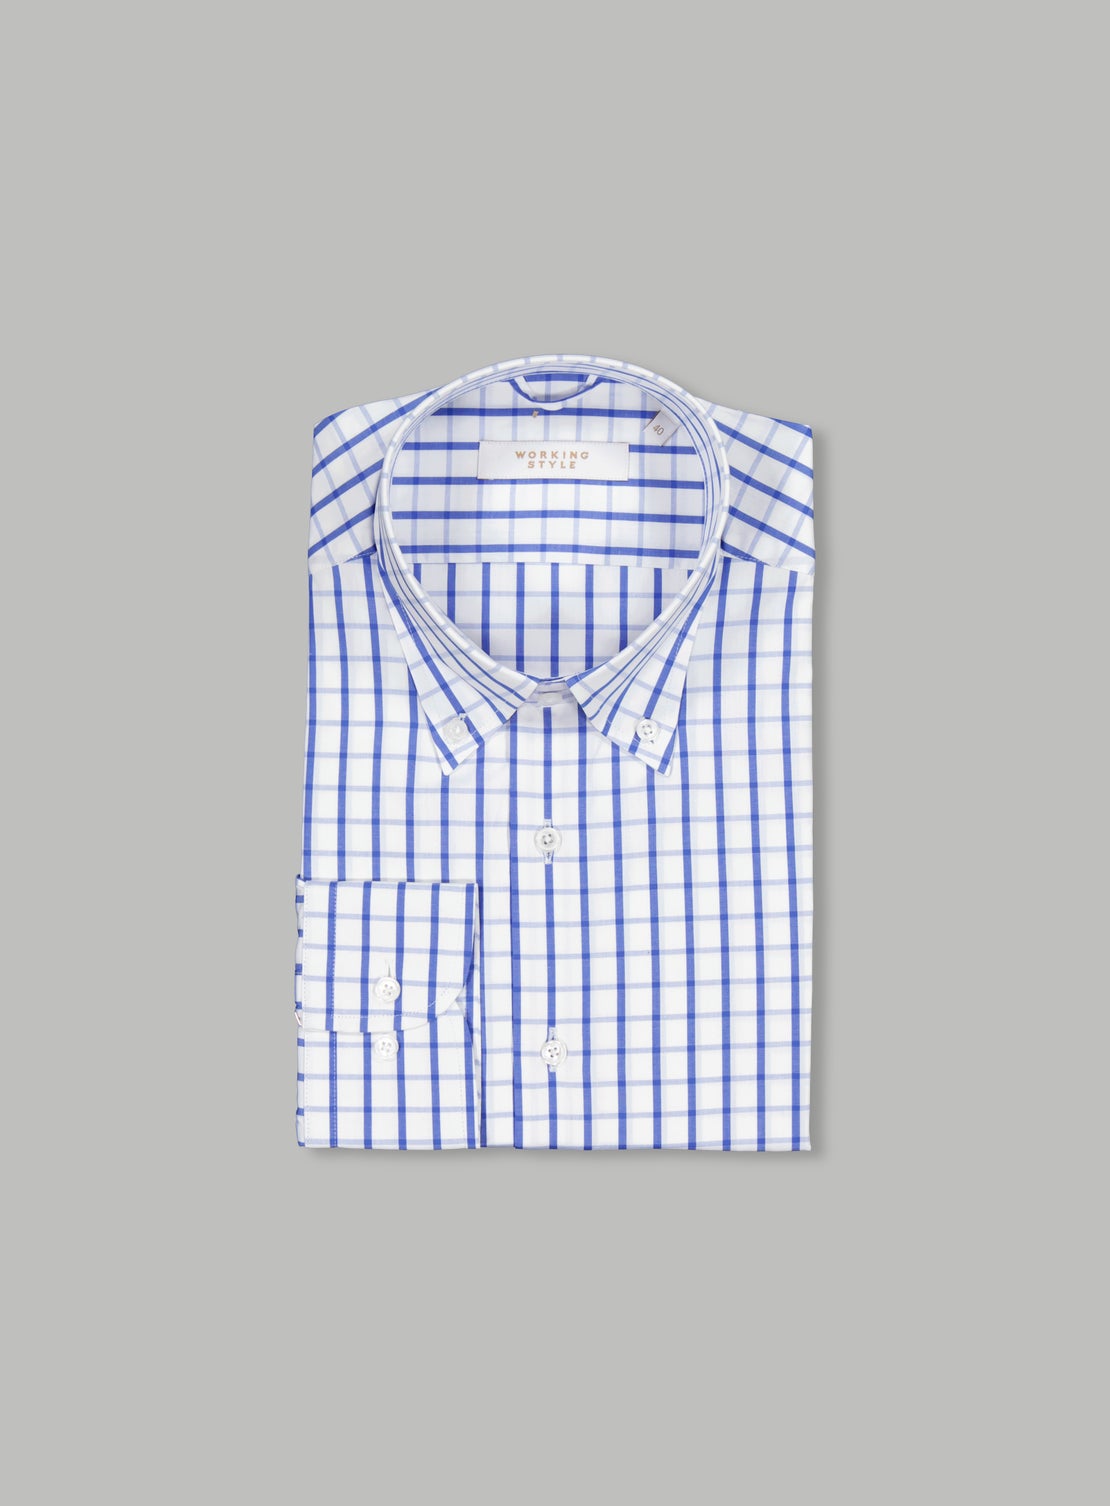 Sonny Blue & White Check Shirt